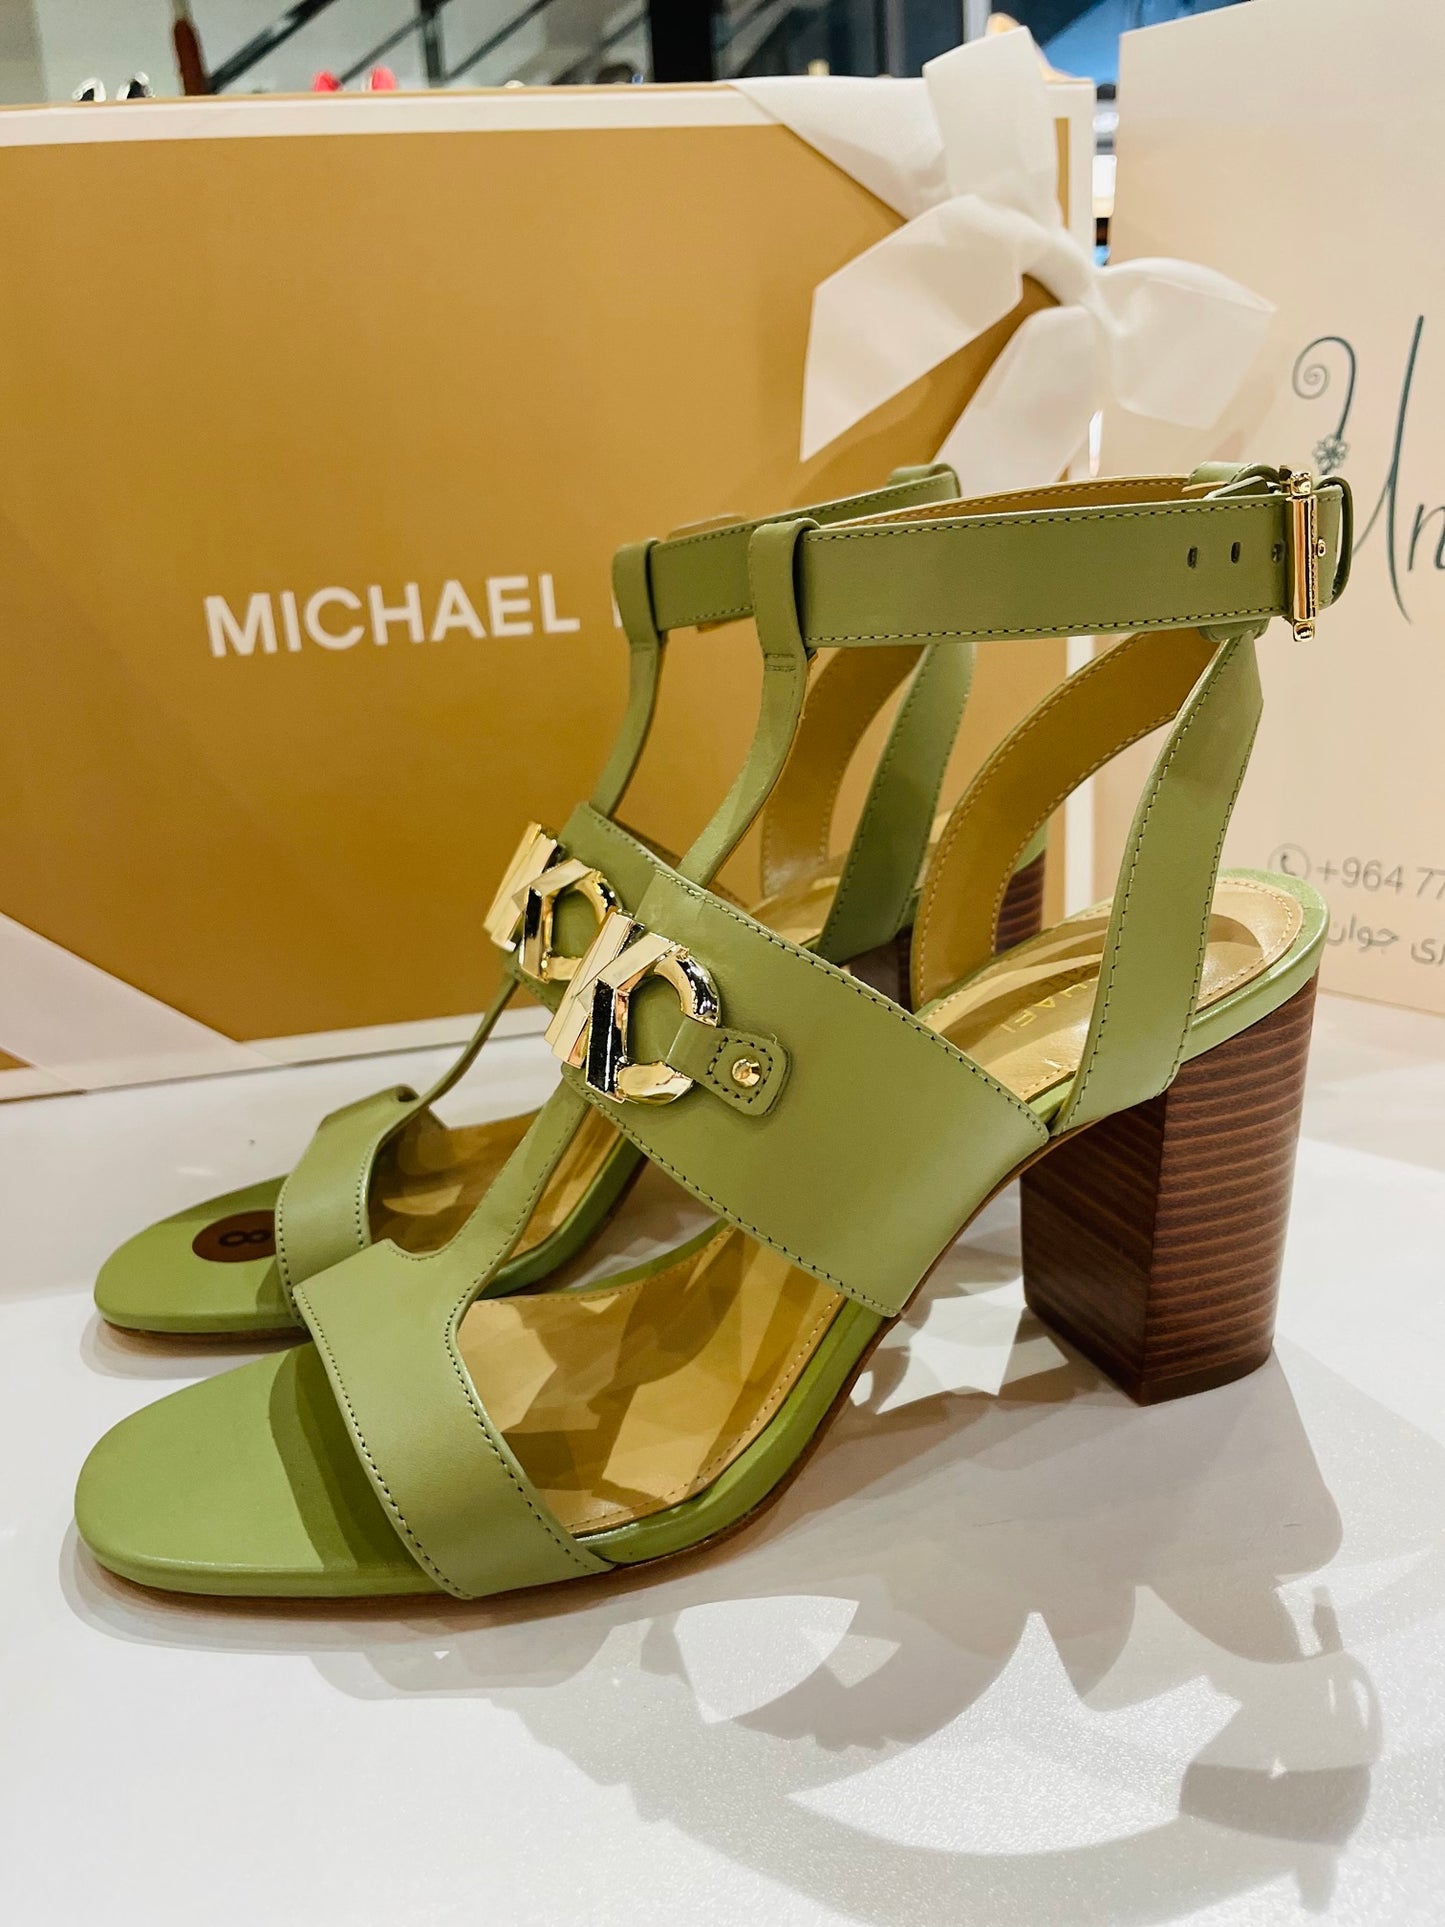 Michael Kore shoes